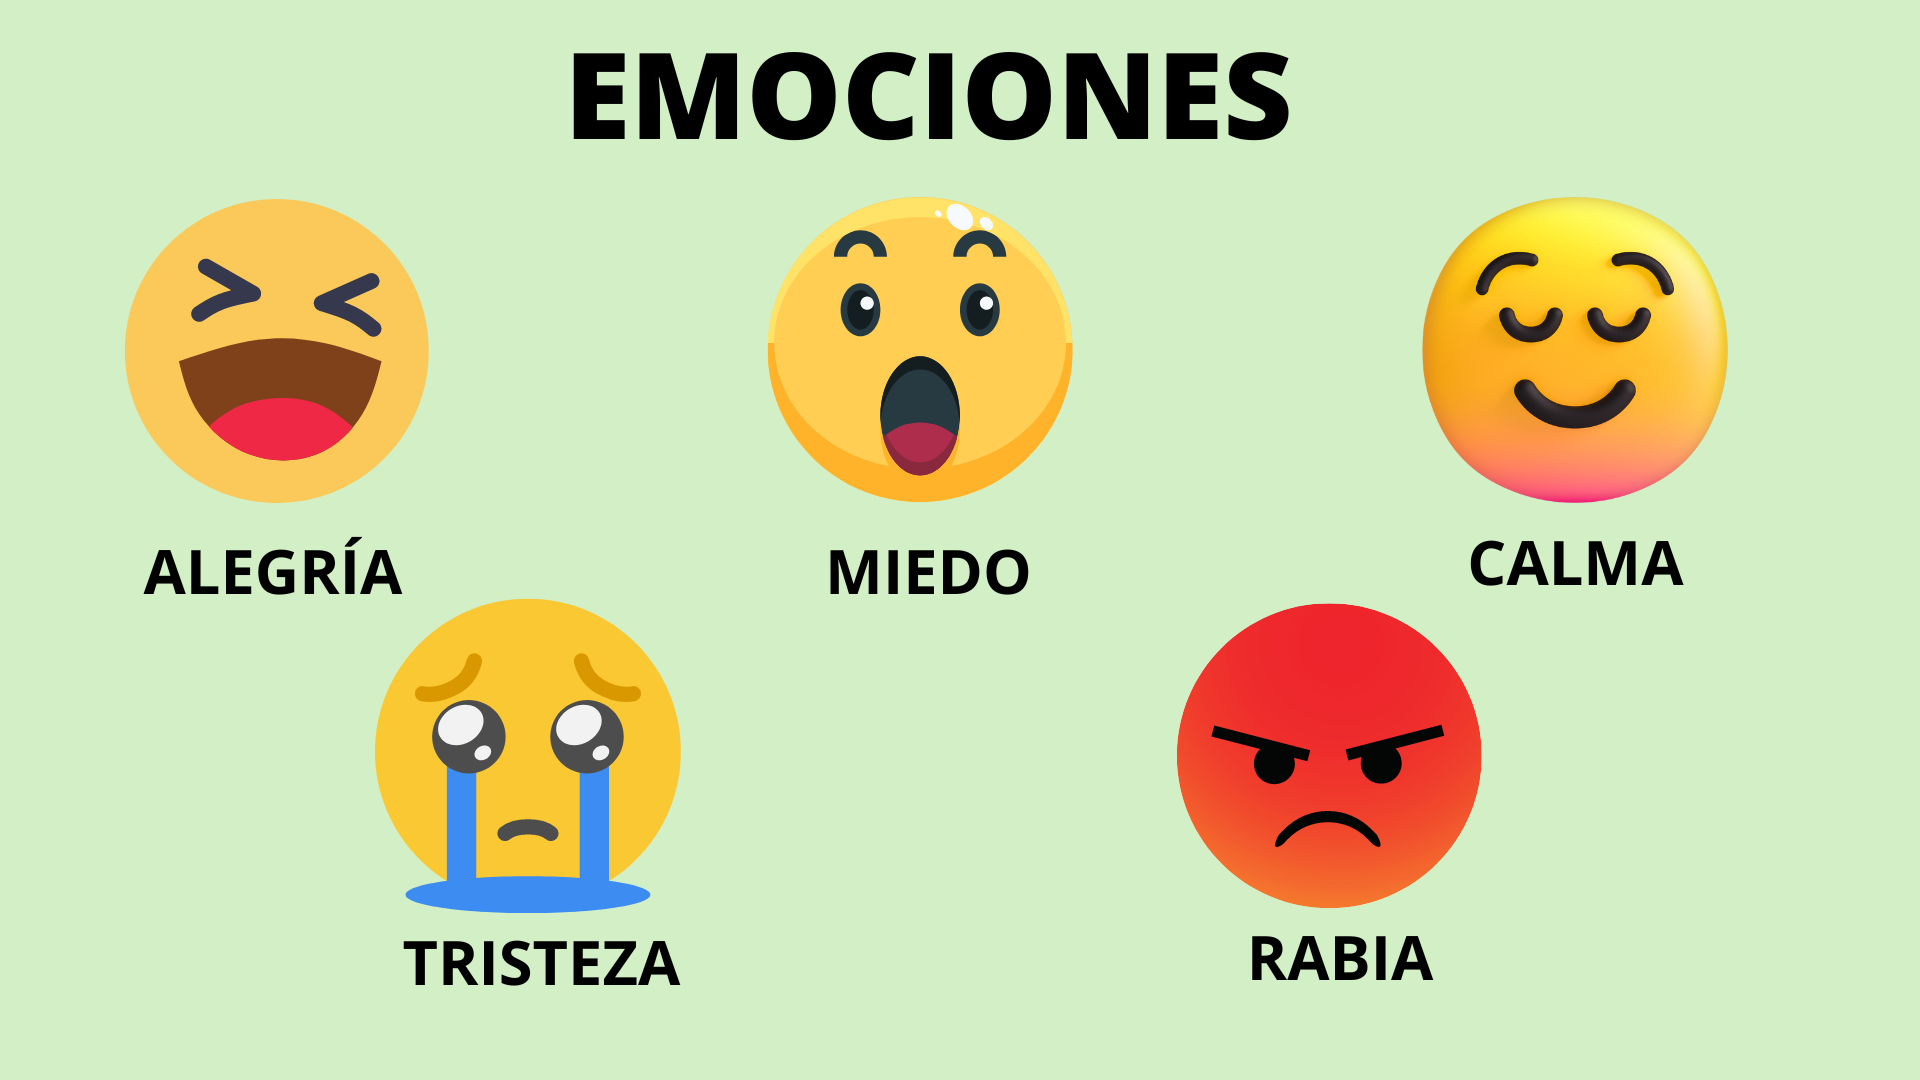 La imagen muestra emojis con la expresión de las cinco emociones: alegría, miedo, calma, tristeza y rabia